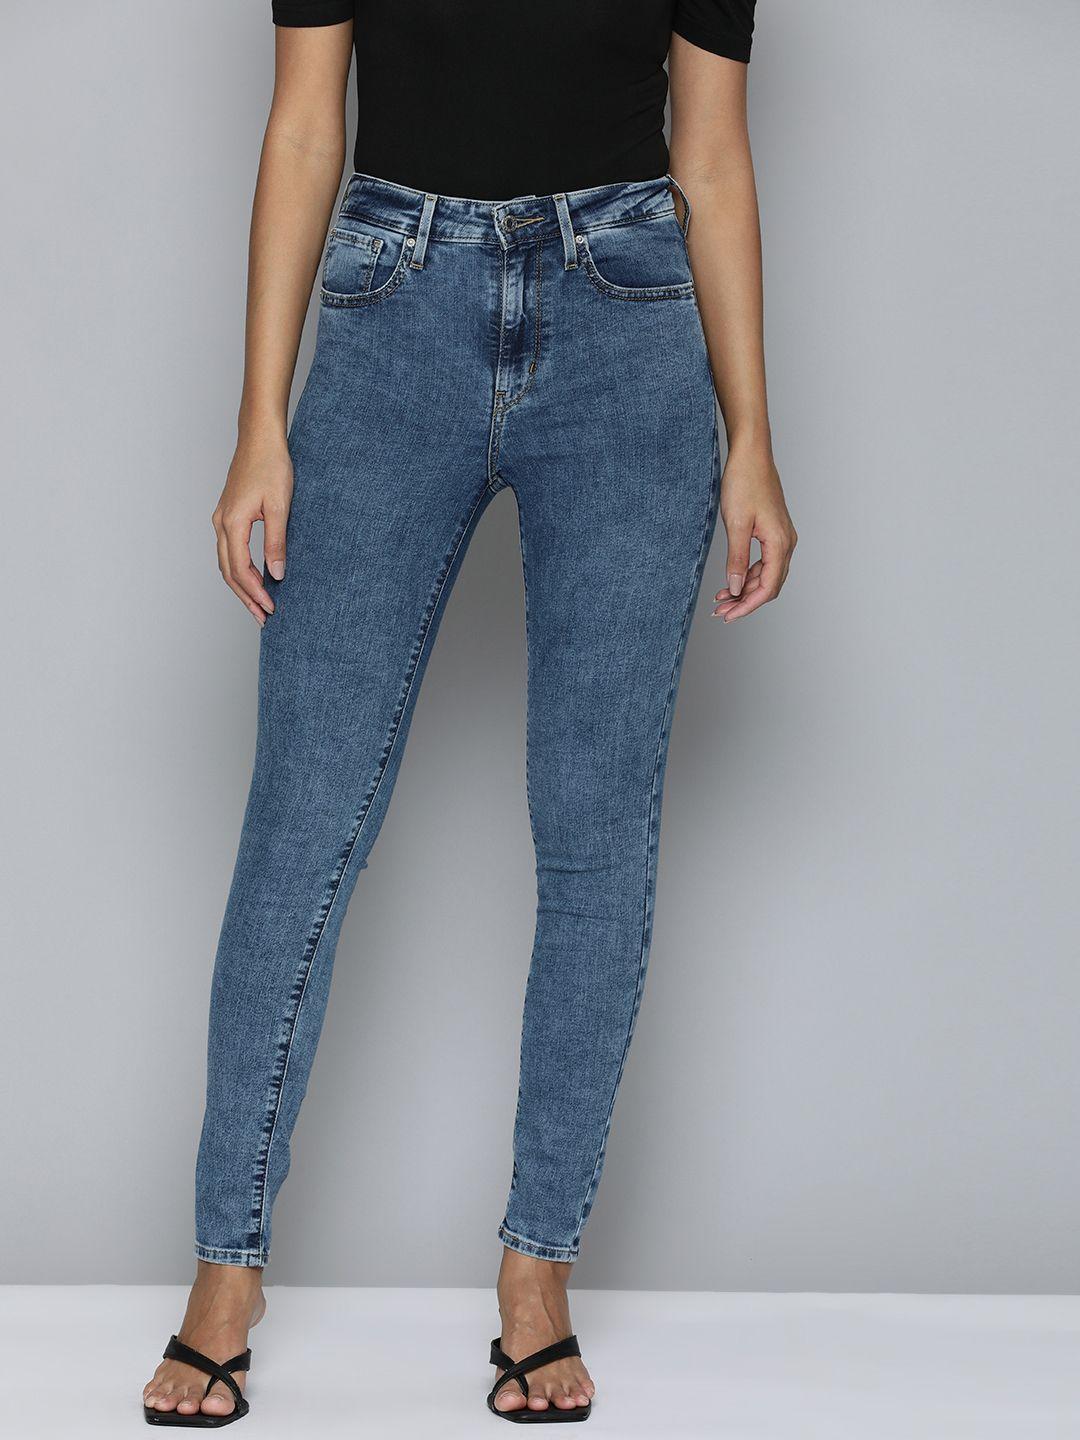 levis women faded jeans